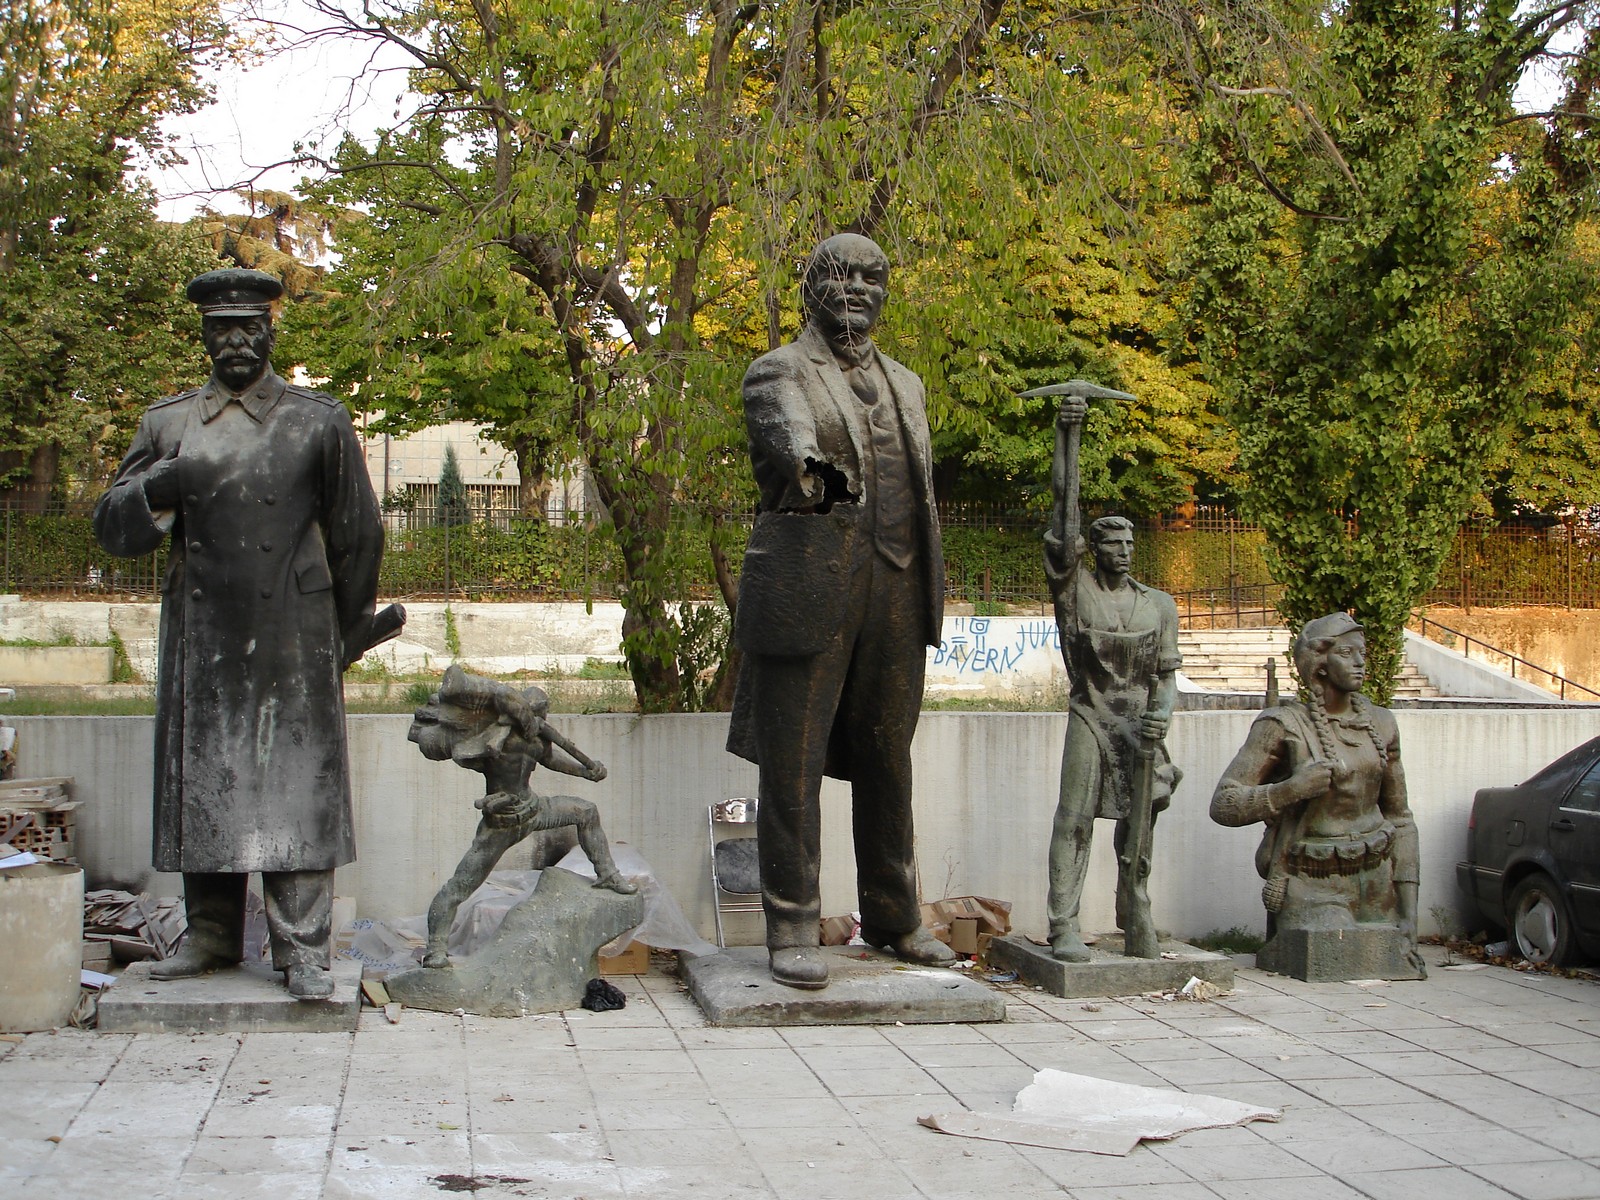 Riesige Statuen - berbleibsel aus der kommunistischen Zeit - Lupe Reisen